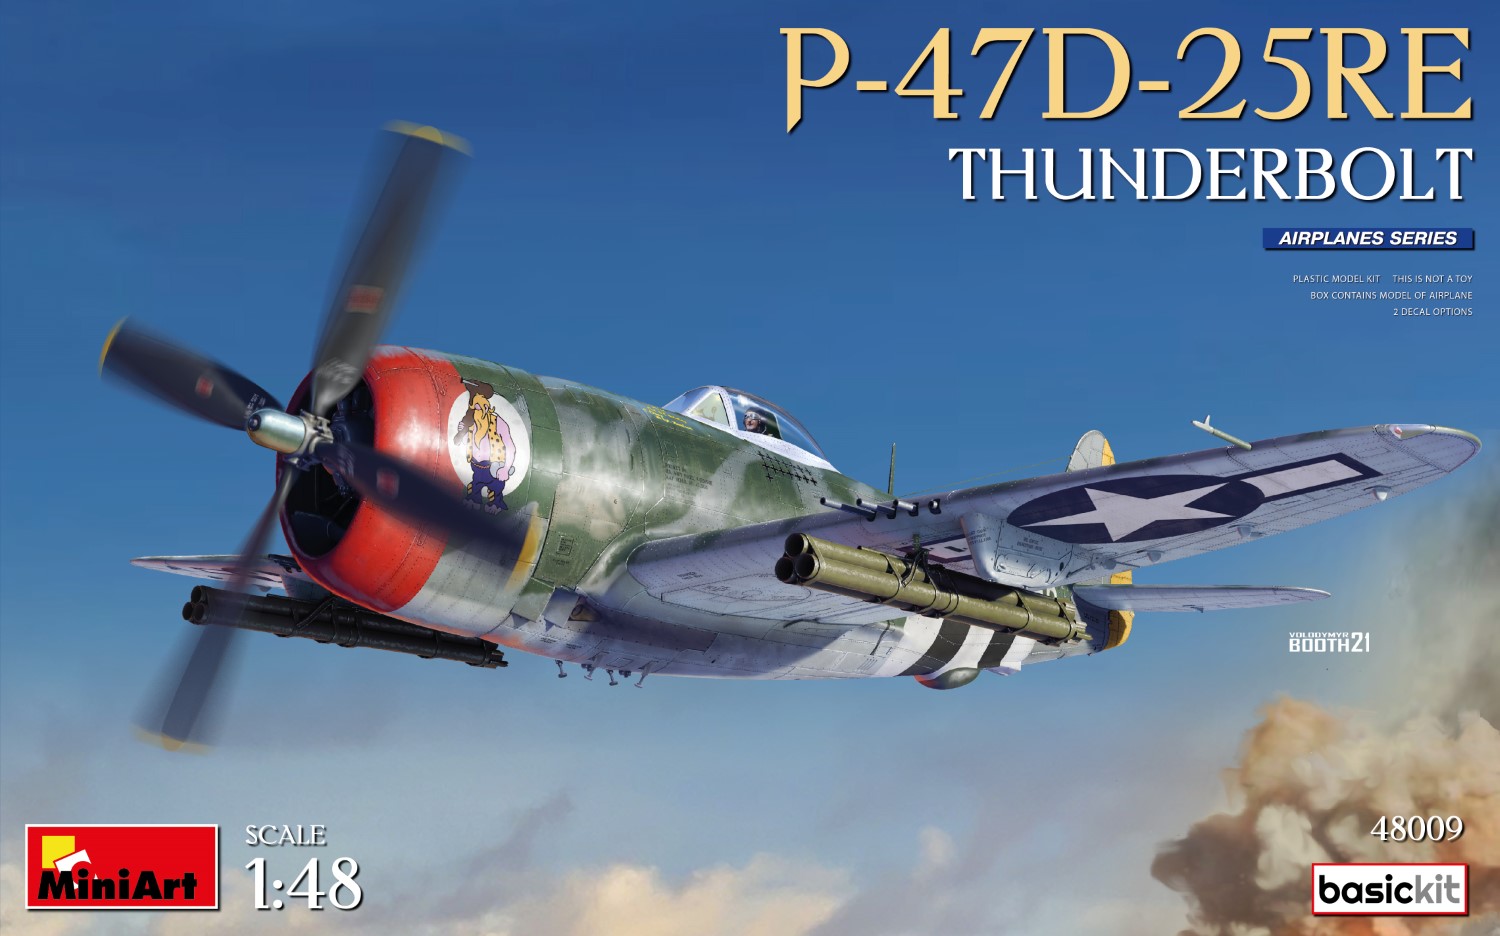 Model kit 1/48 REPUBLIC P-47D -25RE THUNDERBOLT BASIC KIT  (Mini Art)